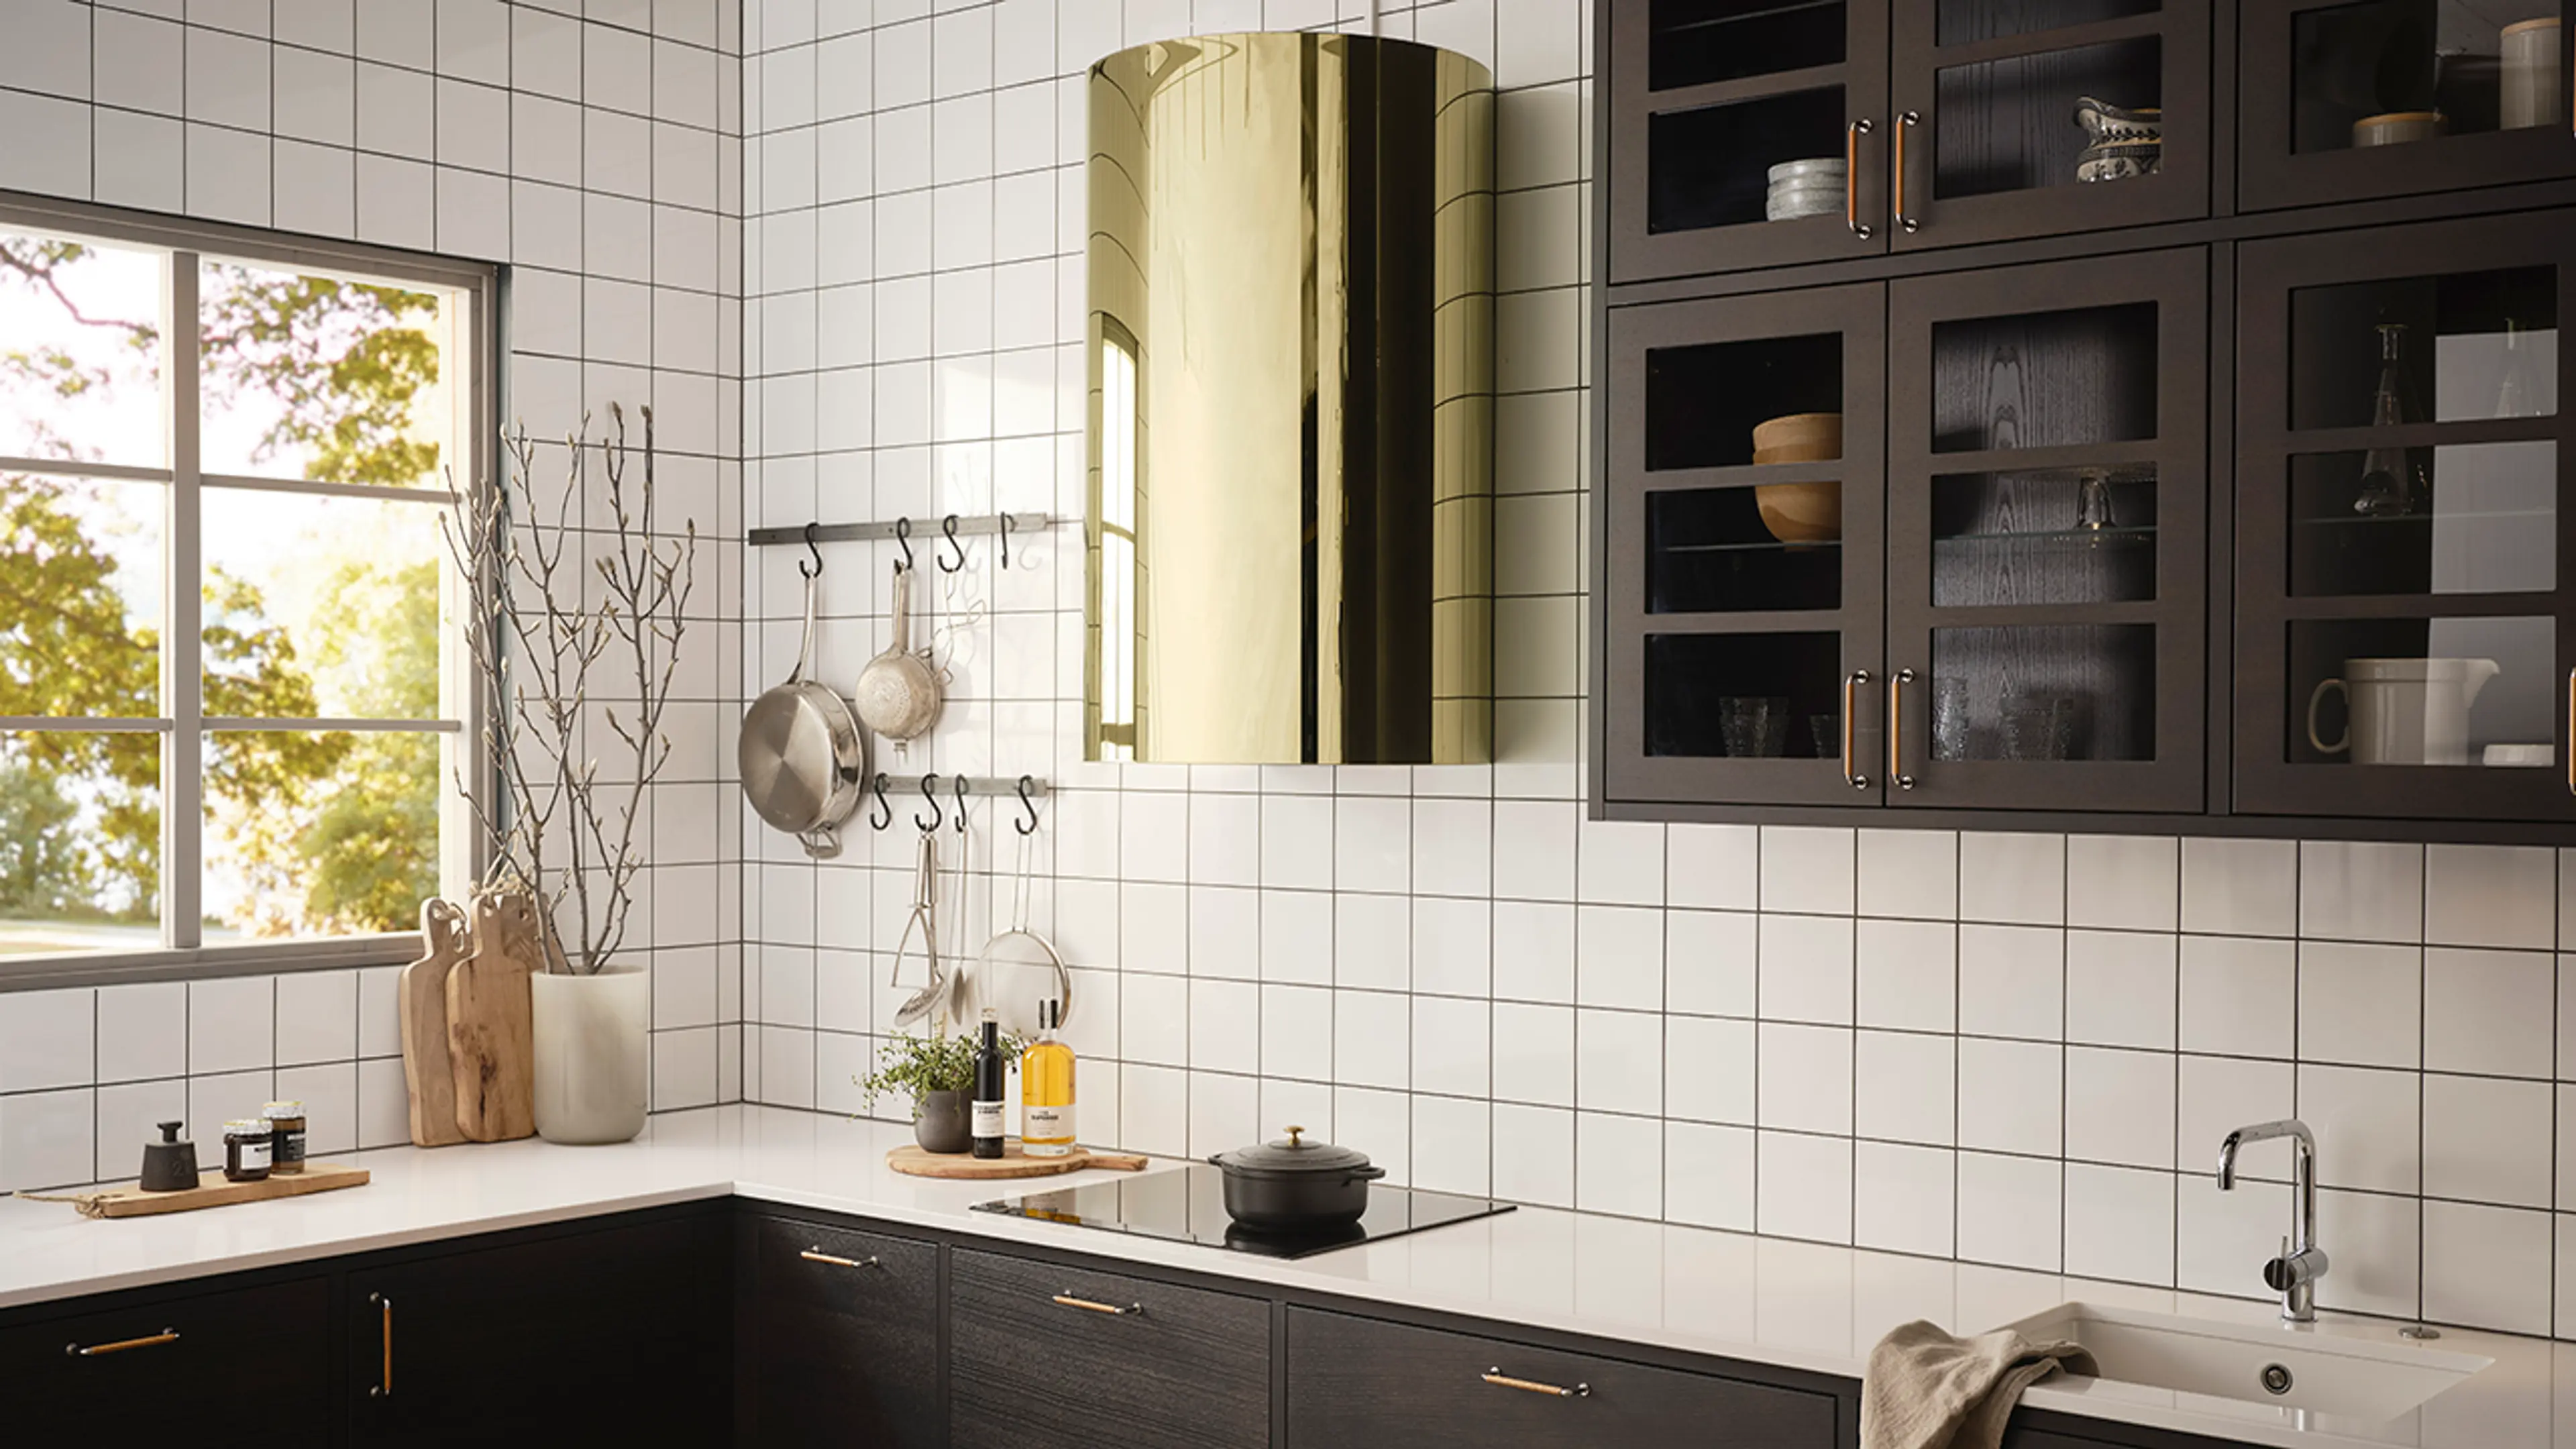 Kjøkkenvifte i messing på hvitt og brunt kjøkken med fliser på veggen.